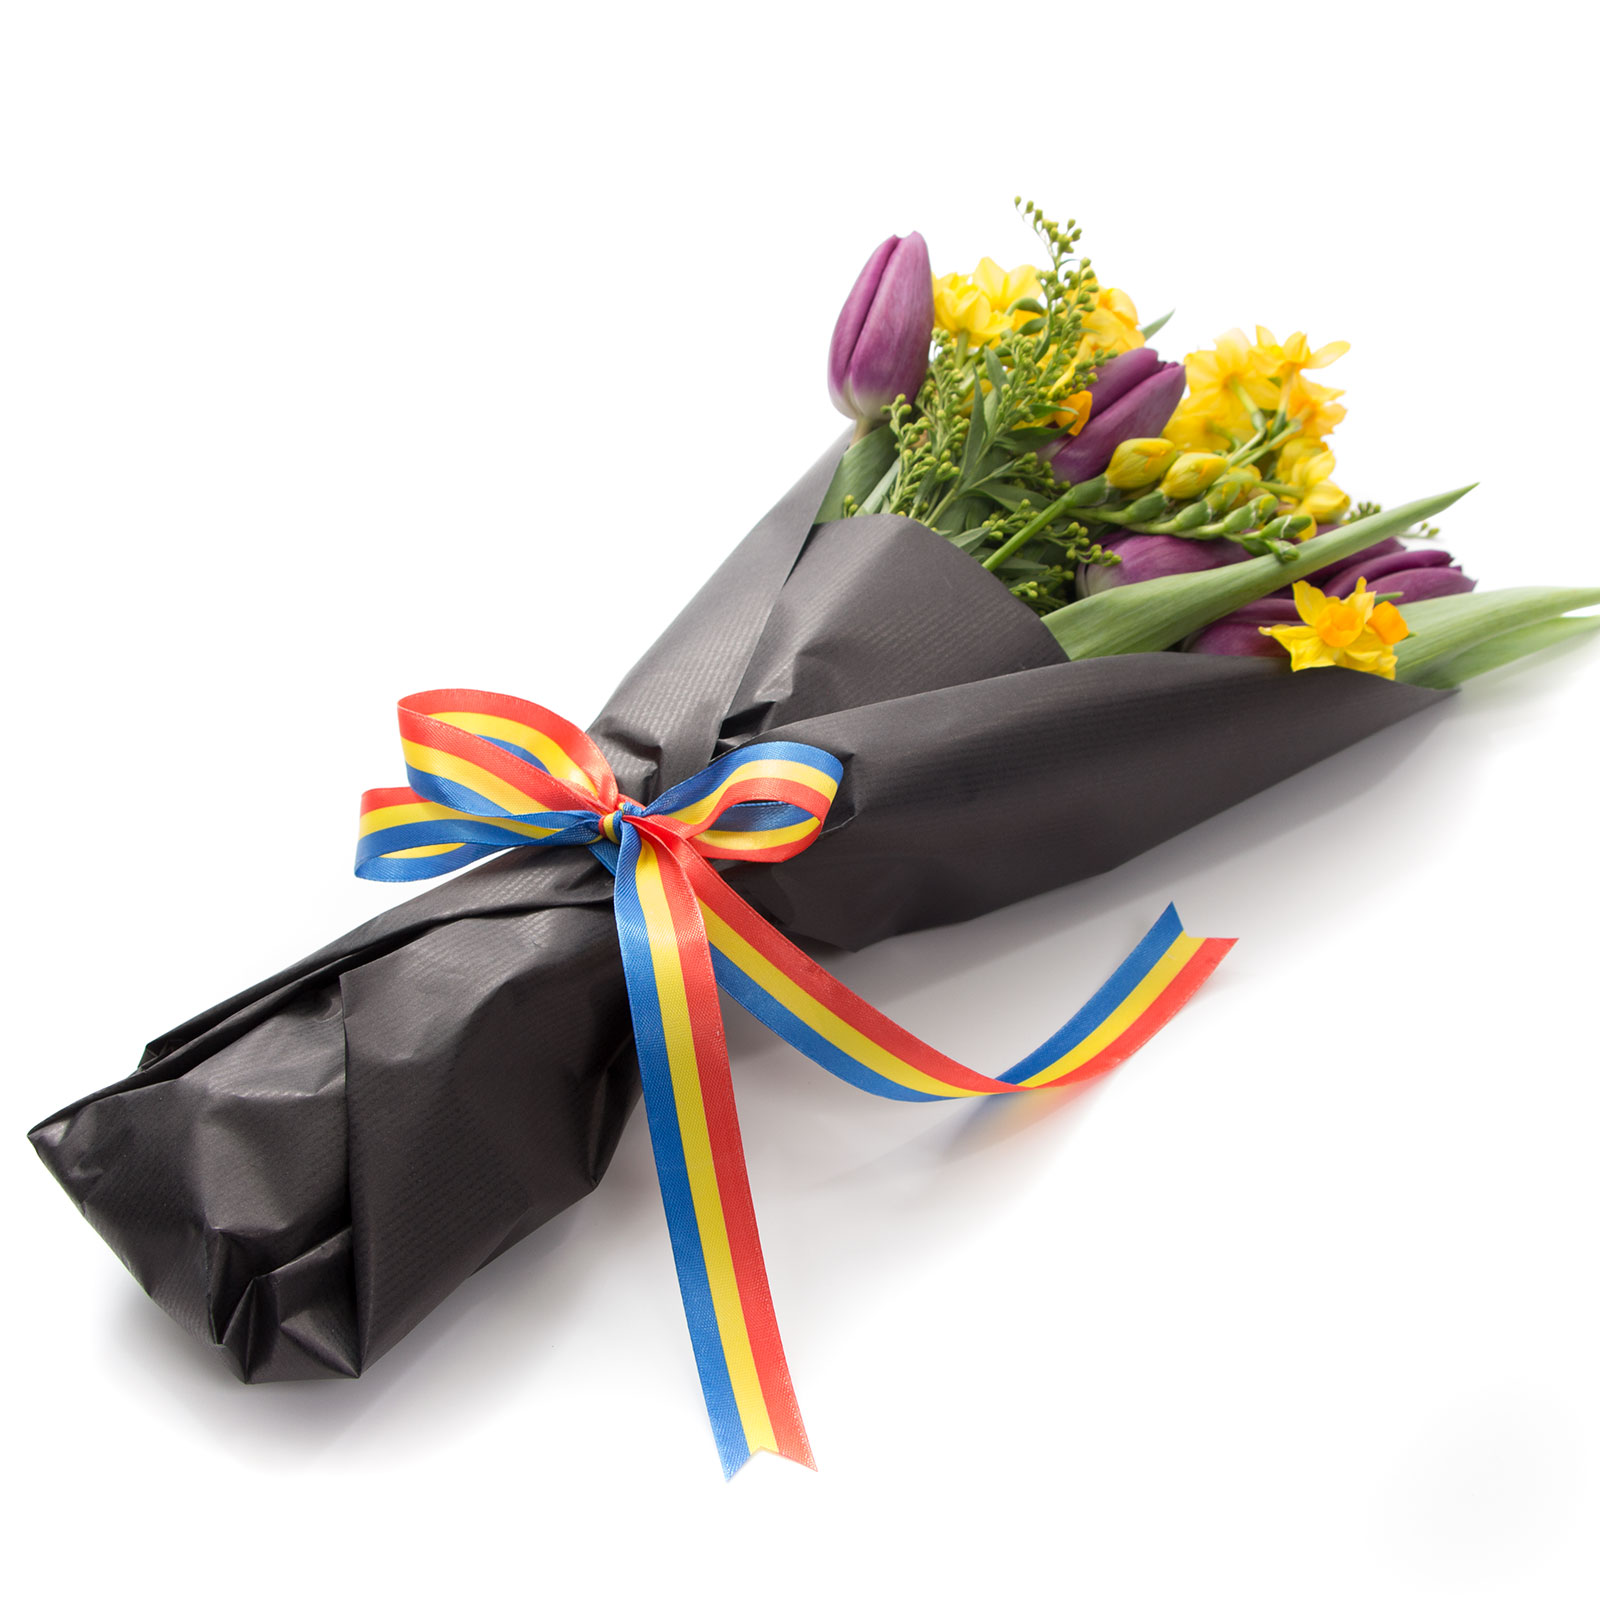 cadou pentru Craciun 2010, buchet de flori multicolor